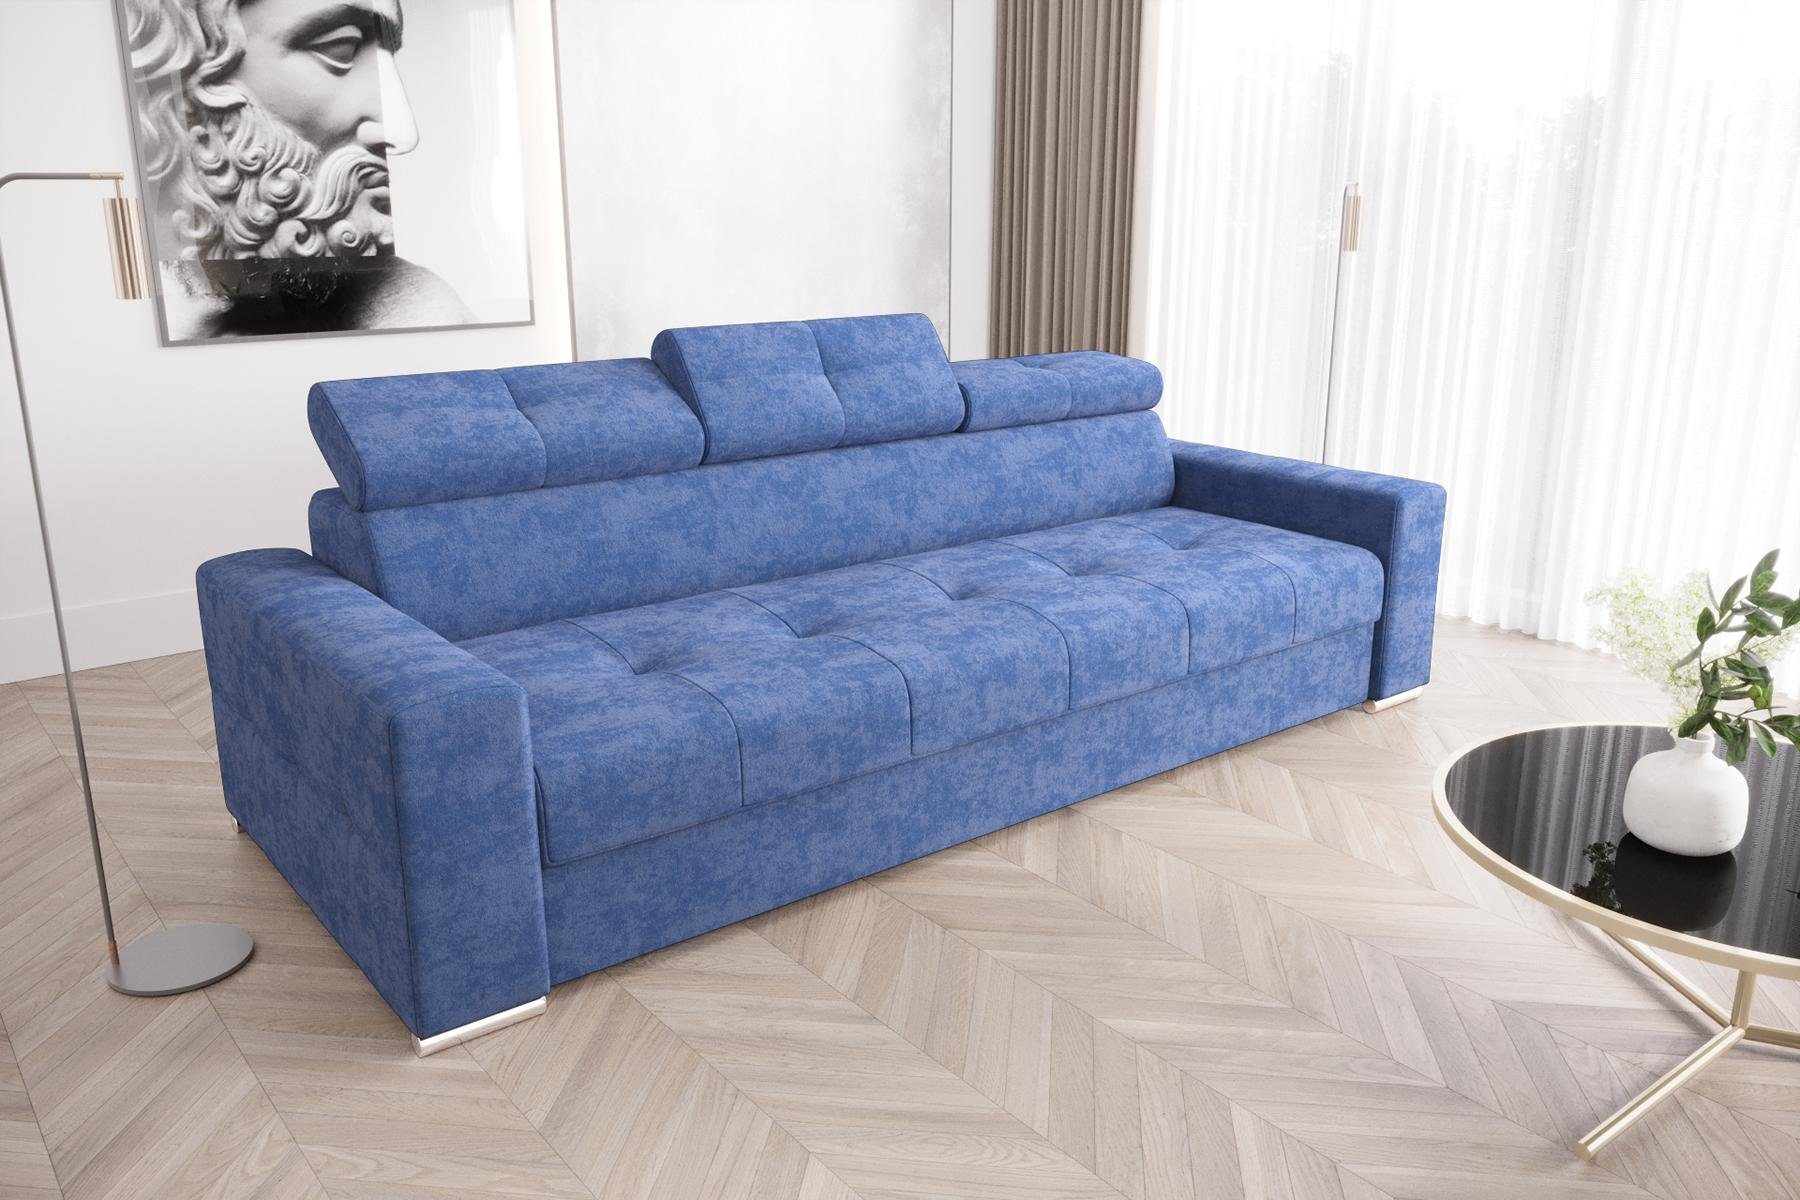 Europe Sofas JVmoebel in Sofa Made Blau Dreisitzer, Zimmer 3er Moderne Weiß Möbel Sitz Polster